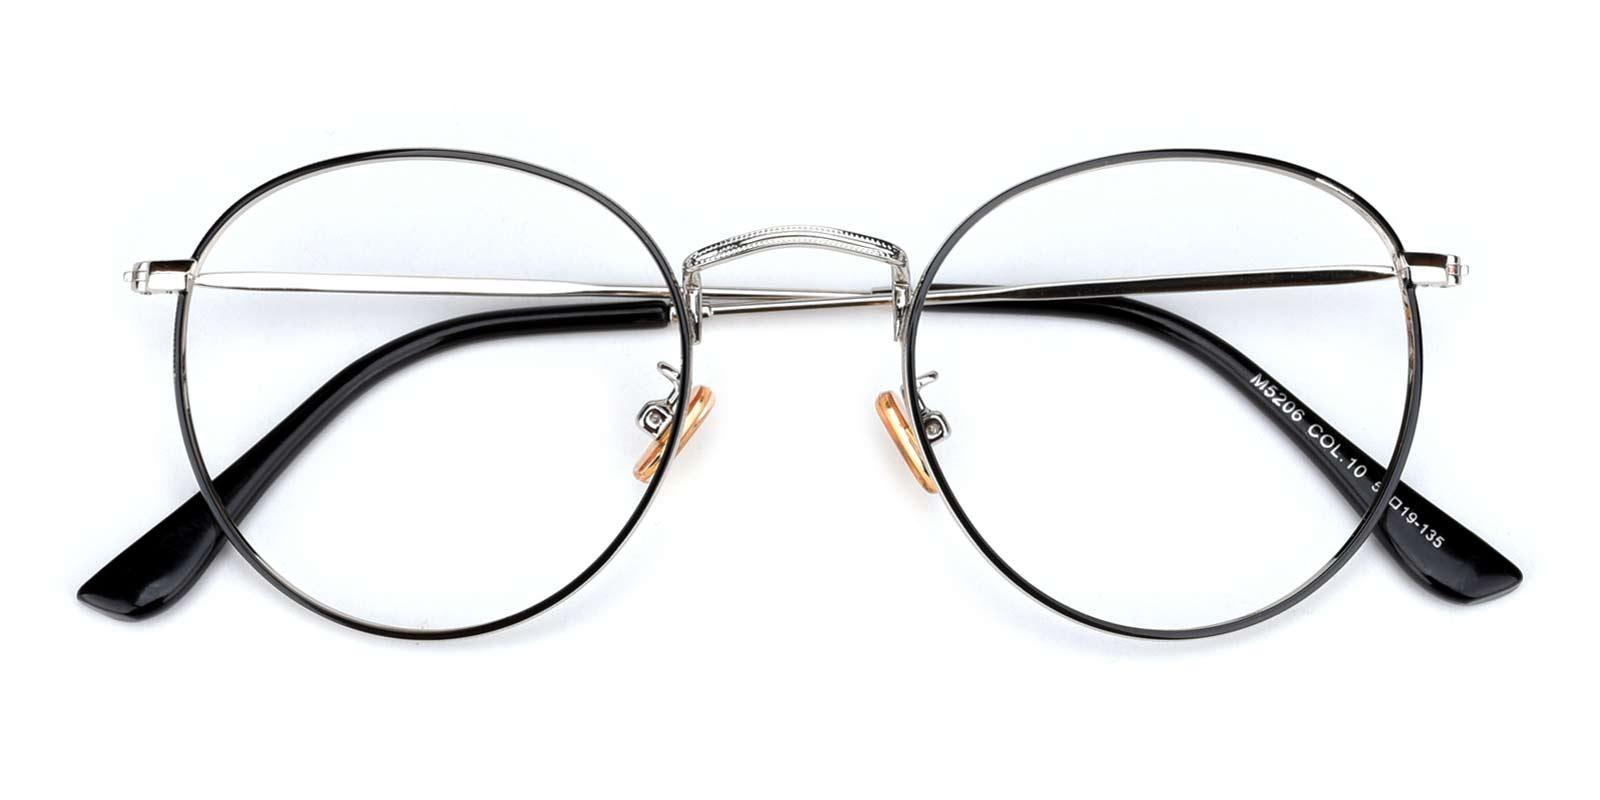 St. Louis Eyeglasses Cheap Prescription Glasses Online